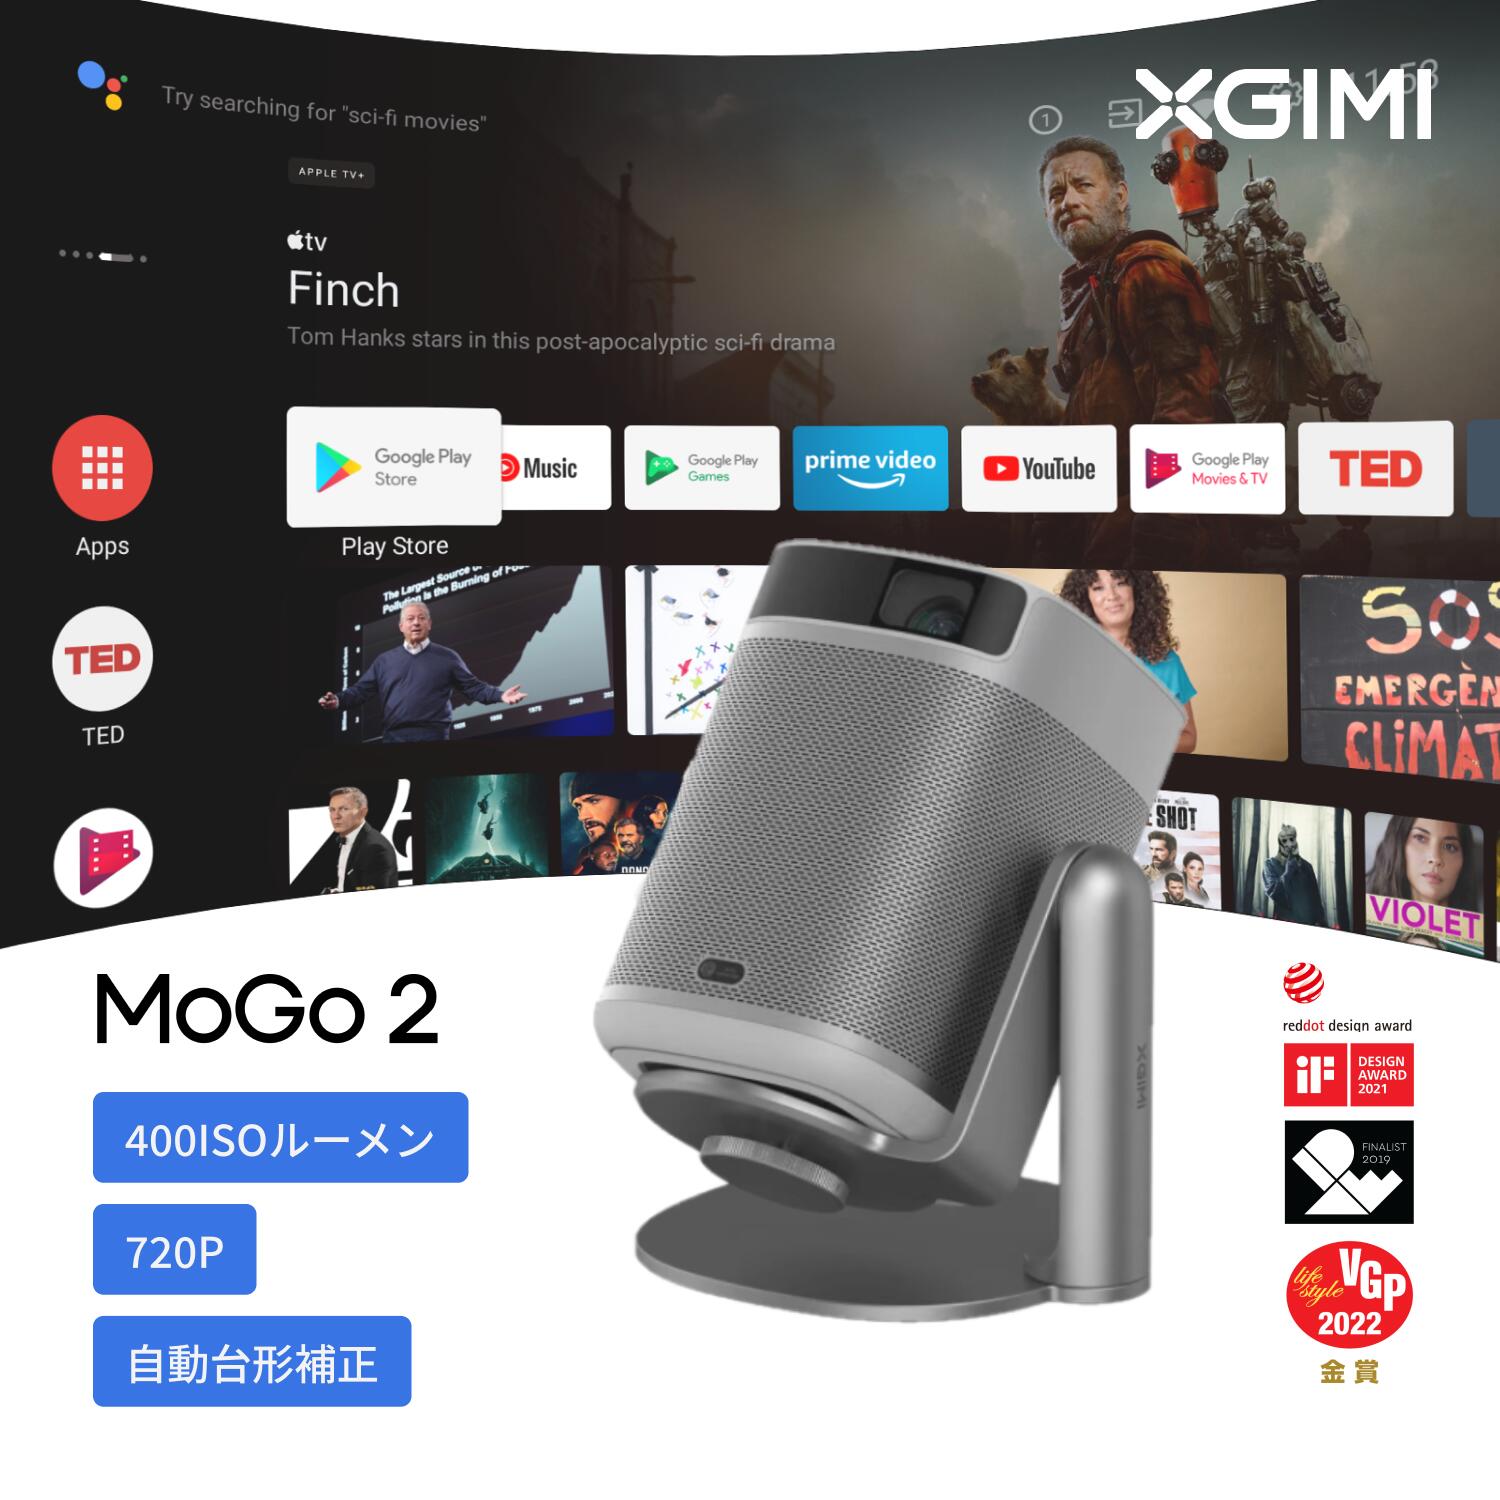 【楽天市場】XGIMI Halo+ モバイルプロジェクター フルHD 1080p 